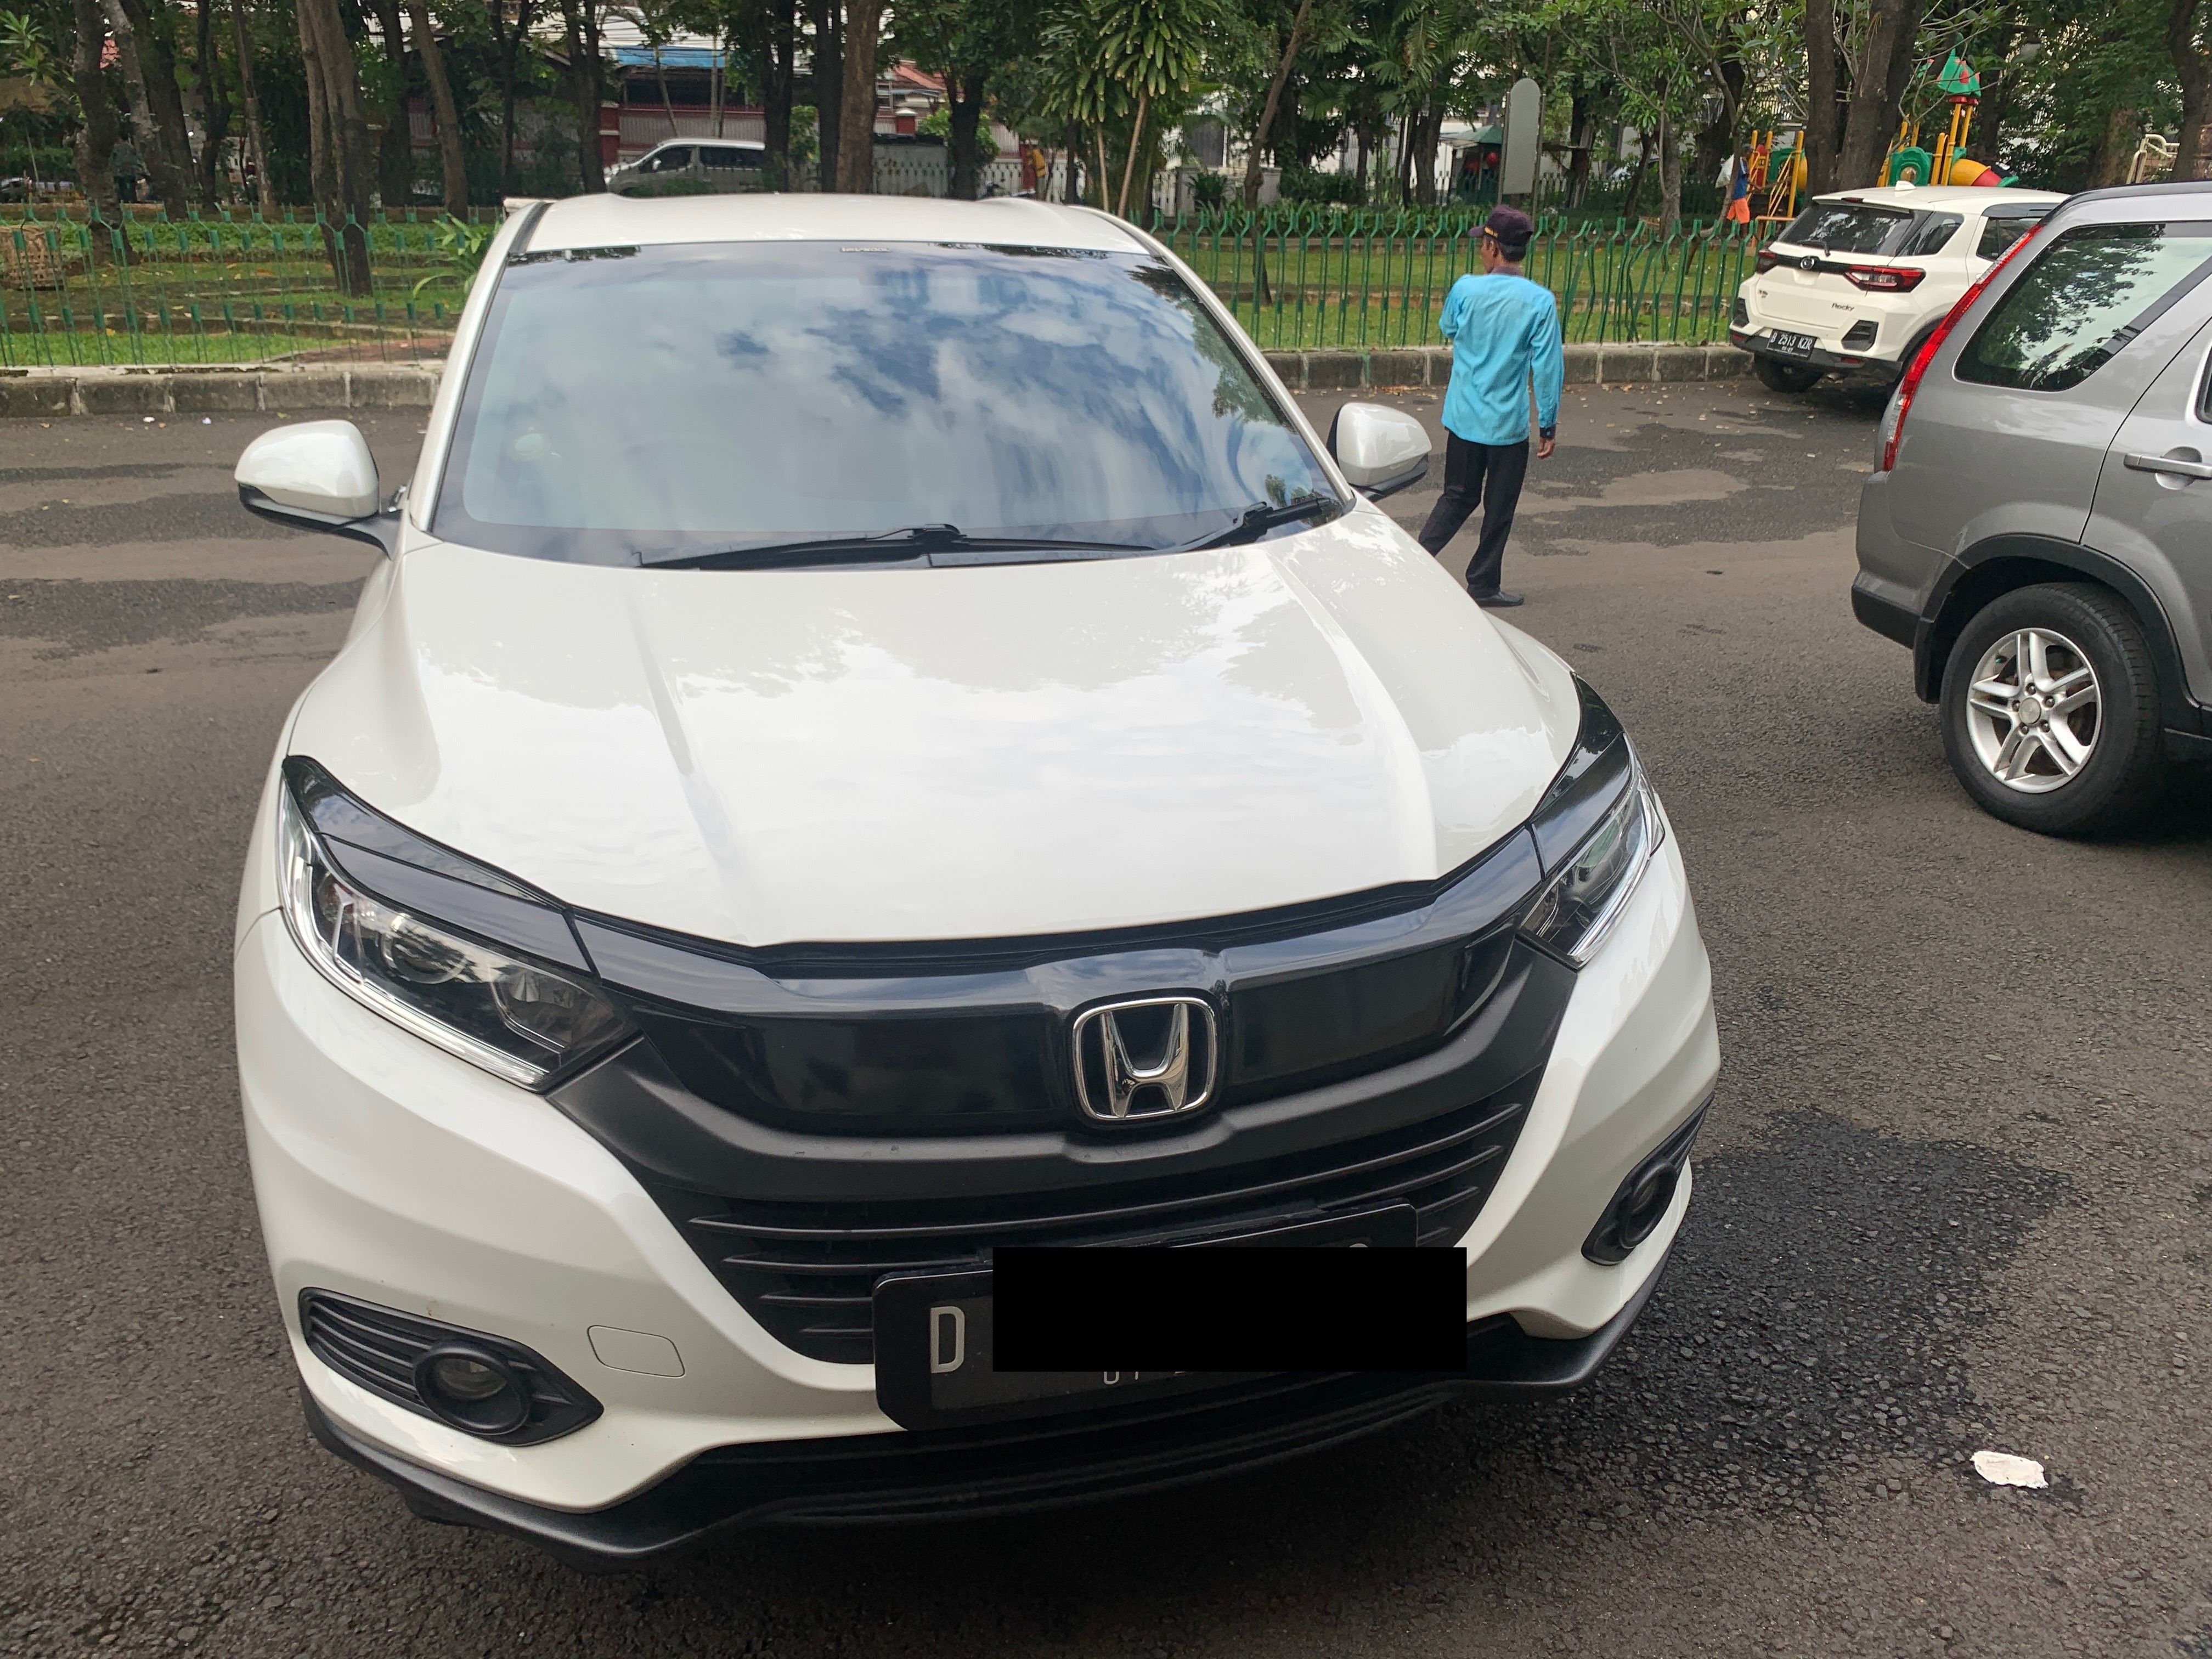 2018 Honda HRV 1.5L E CVT Bekas